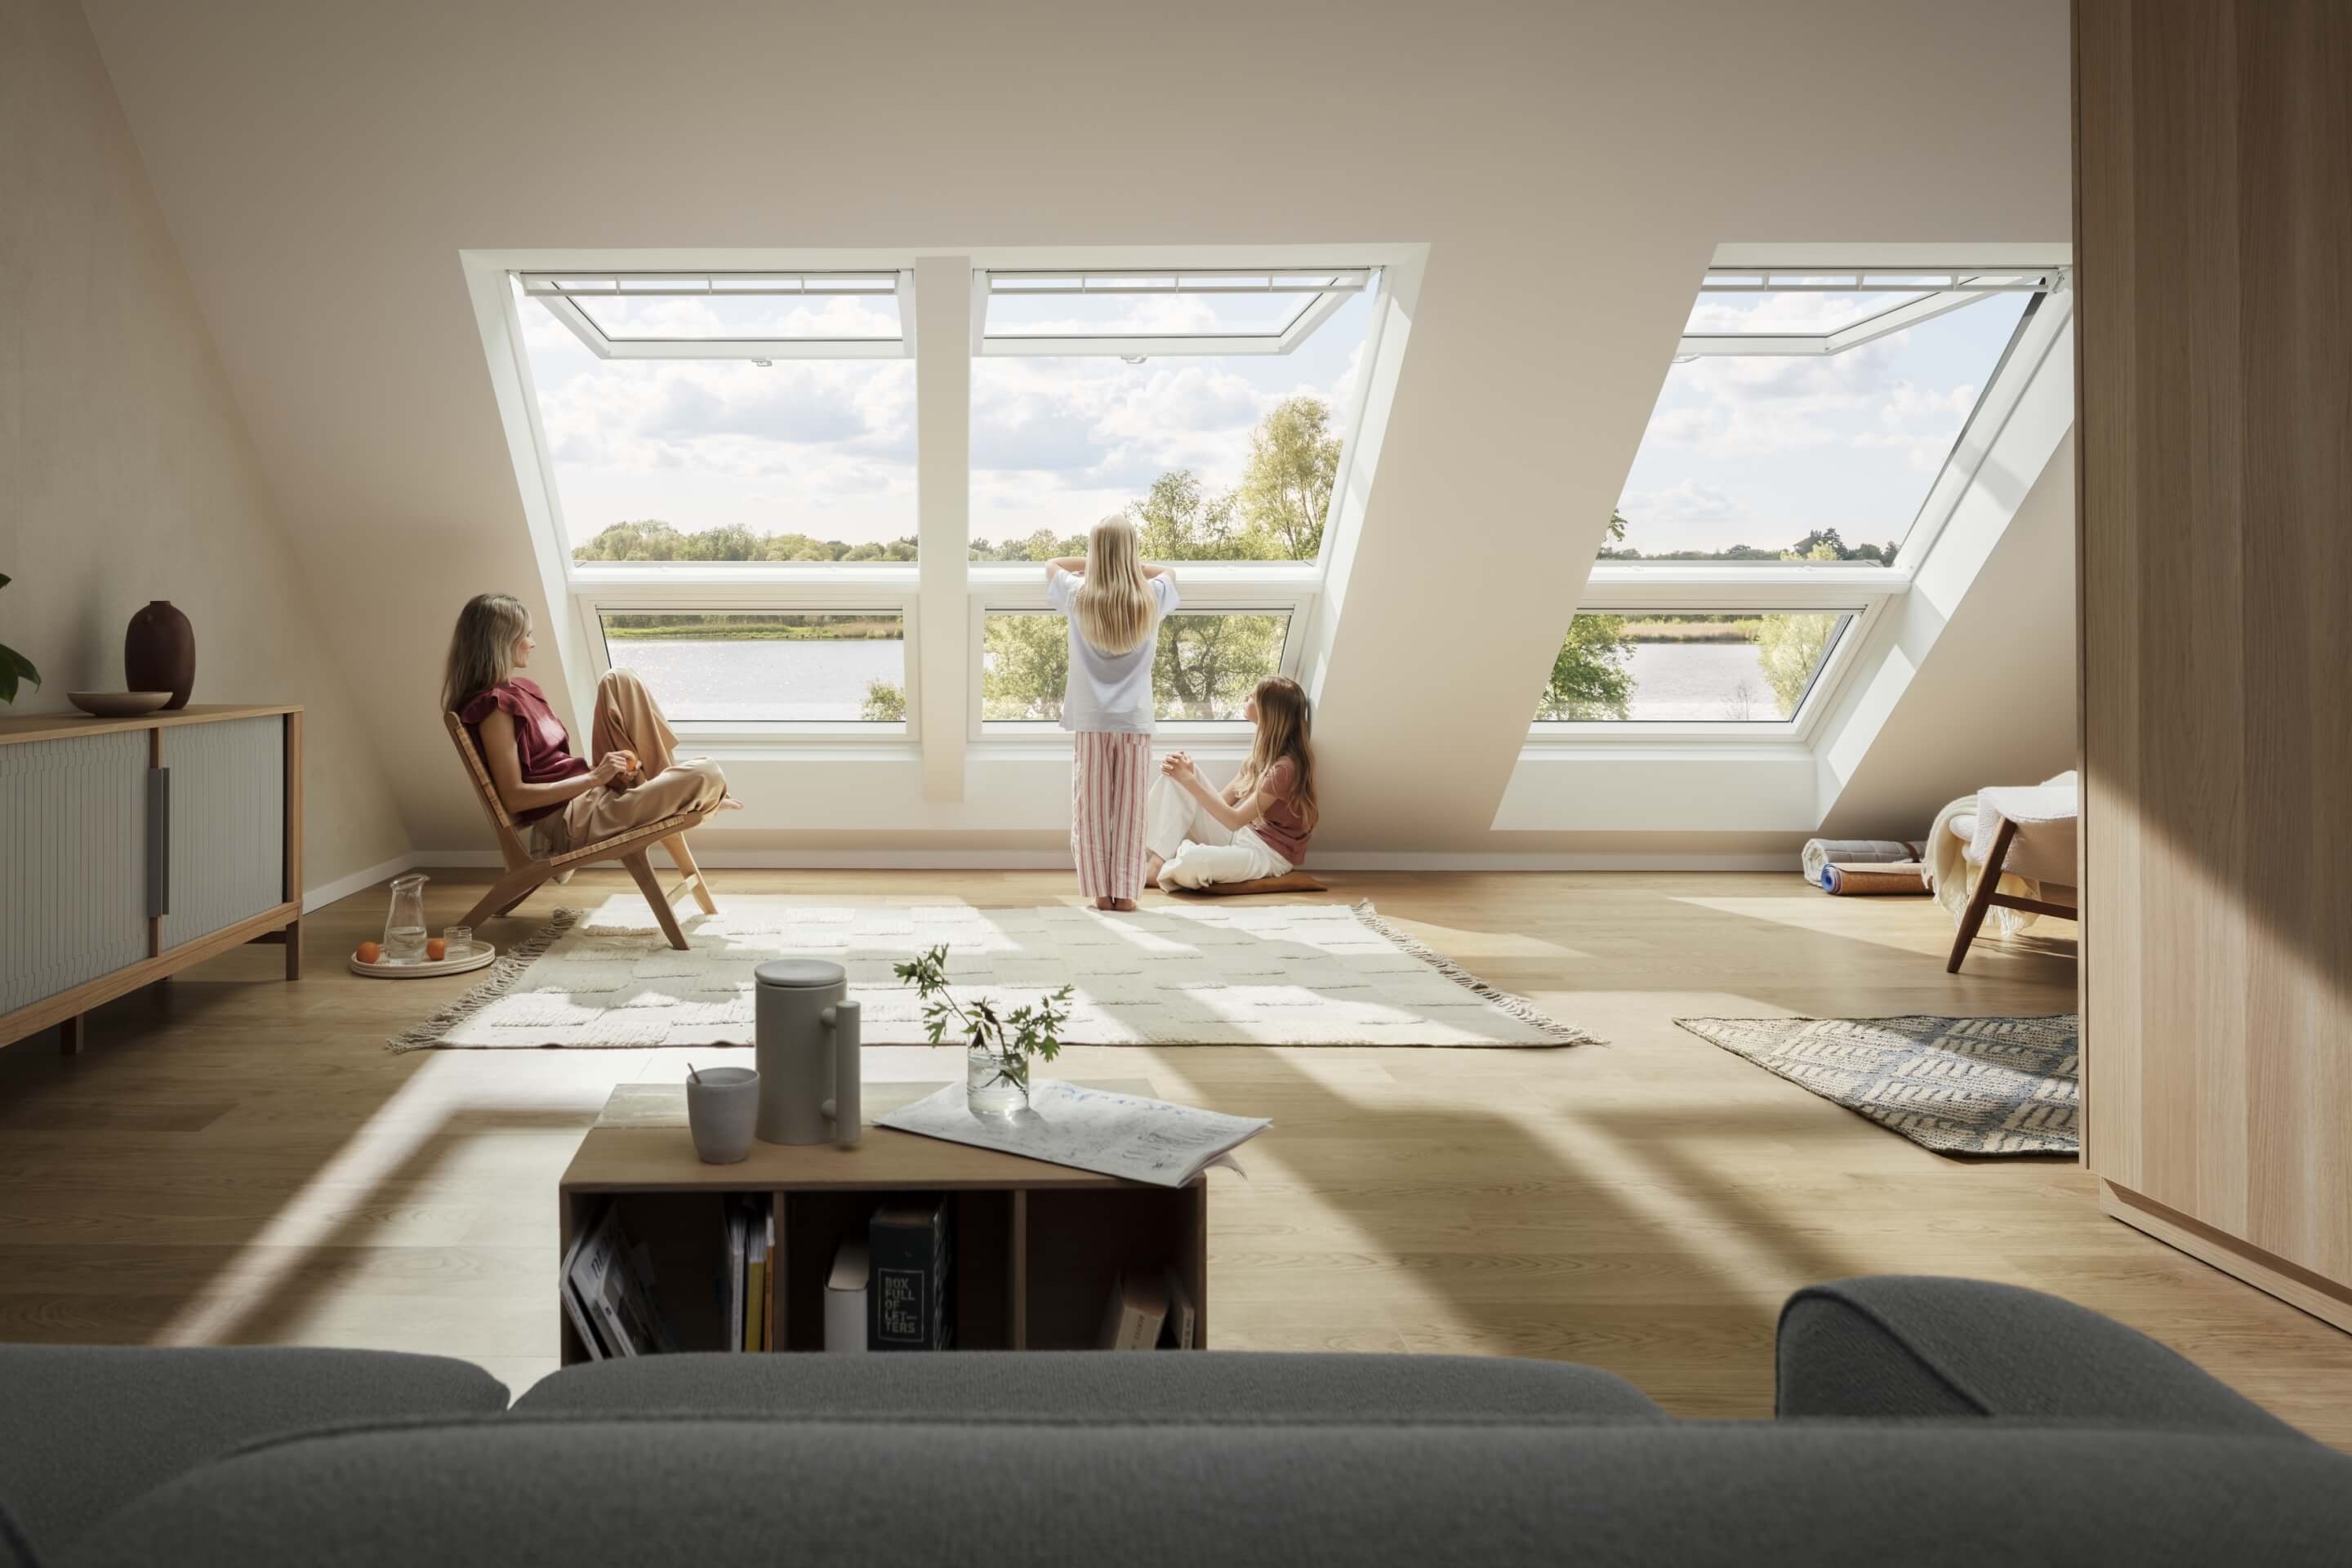 Wohnzimmer im Dachboden mit VELUX Dachflächenfenstern mit Blick auf eine Wasserlandschaft, wo eine Frau und Kinder den Raum genießen.